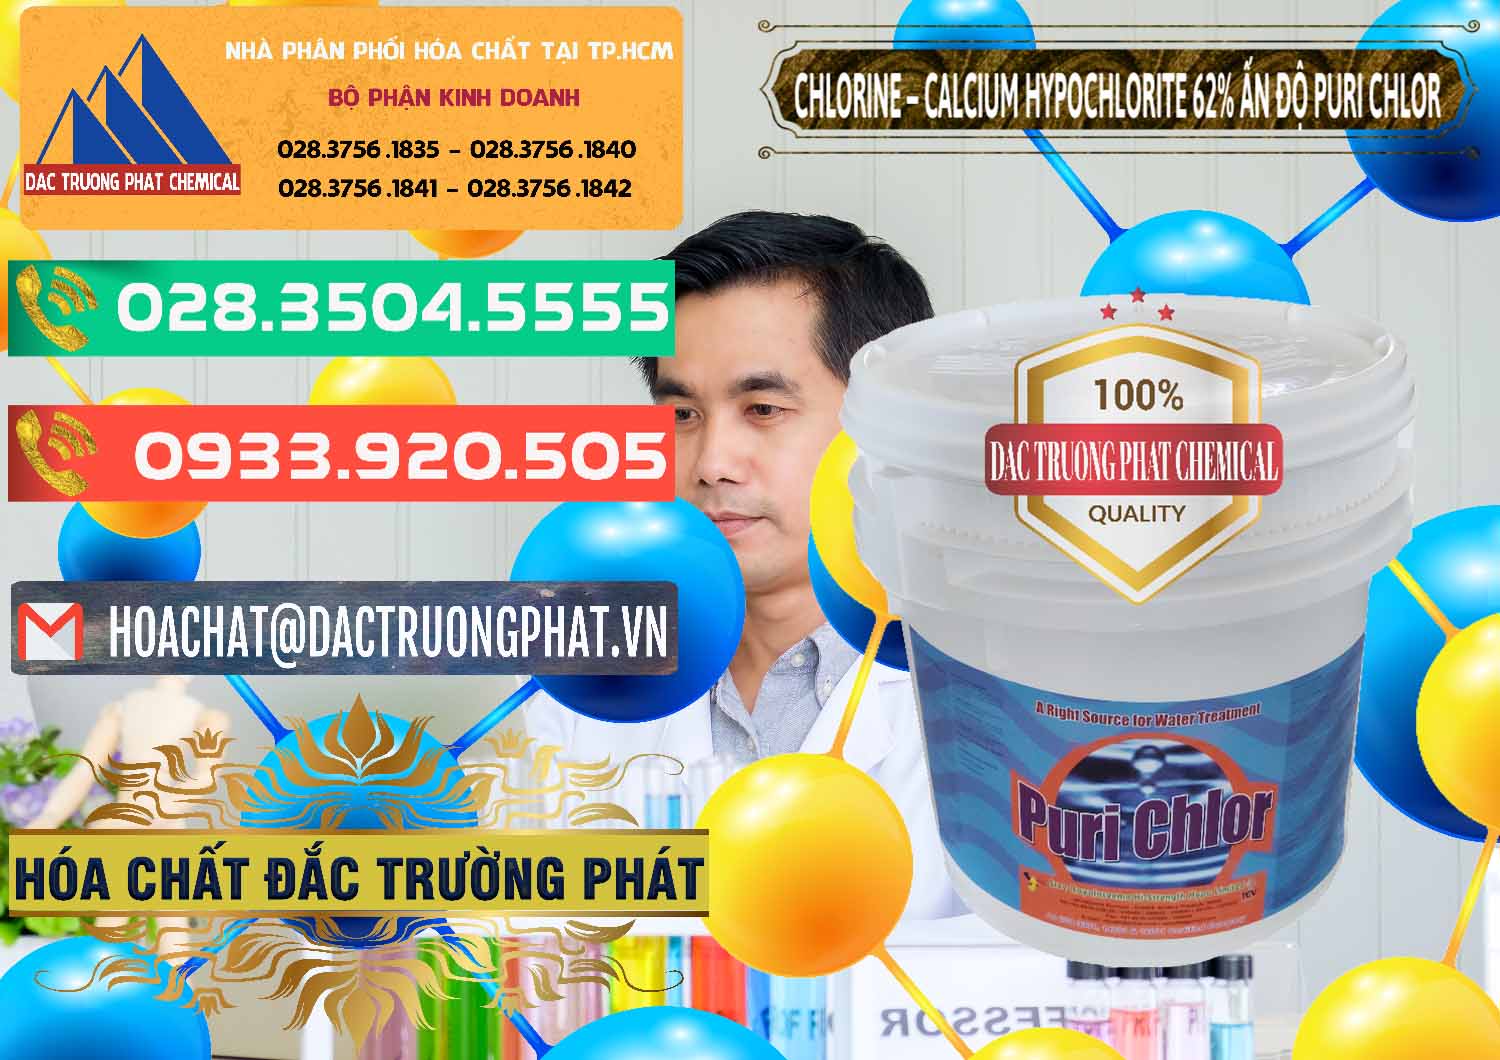 Cty chuyên cung ứng - bán Chlorine – Clorin 62% Puri Chlo Ấn Độ India - 0052 - Nhà phân phối _ cung cấp hóa chất tại TP.HCM - congtyhoachat.com.vn